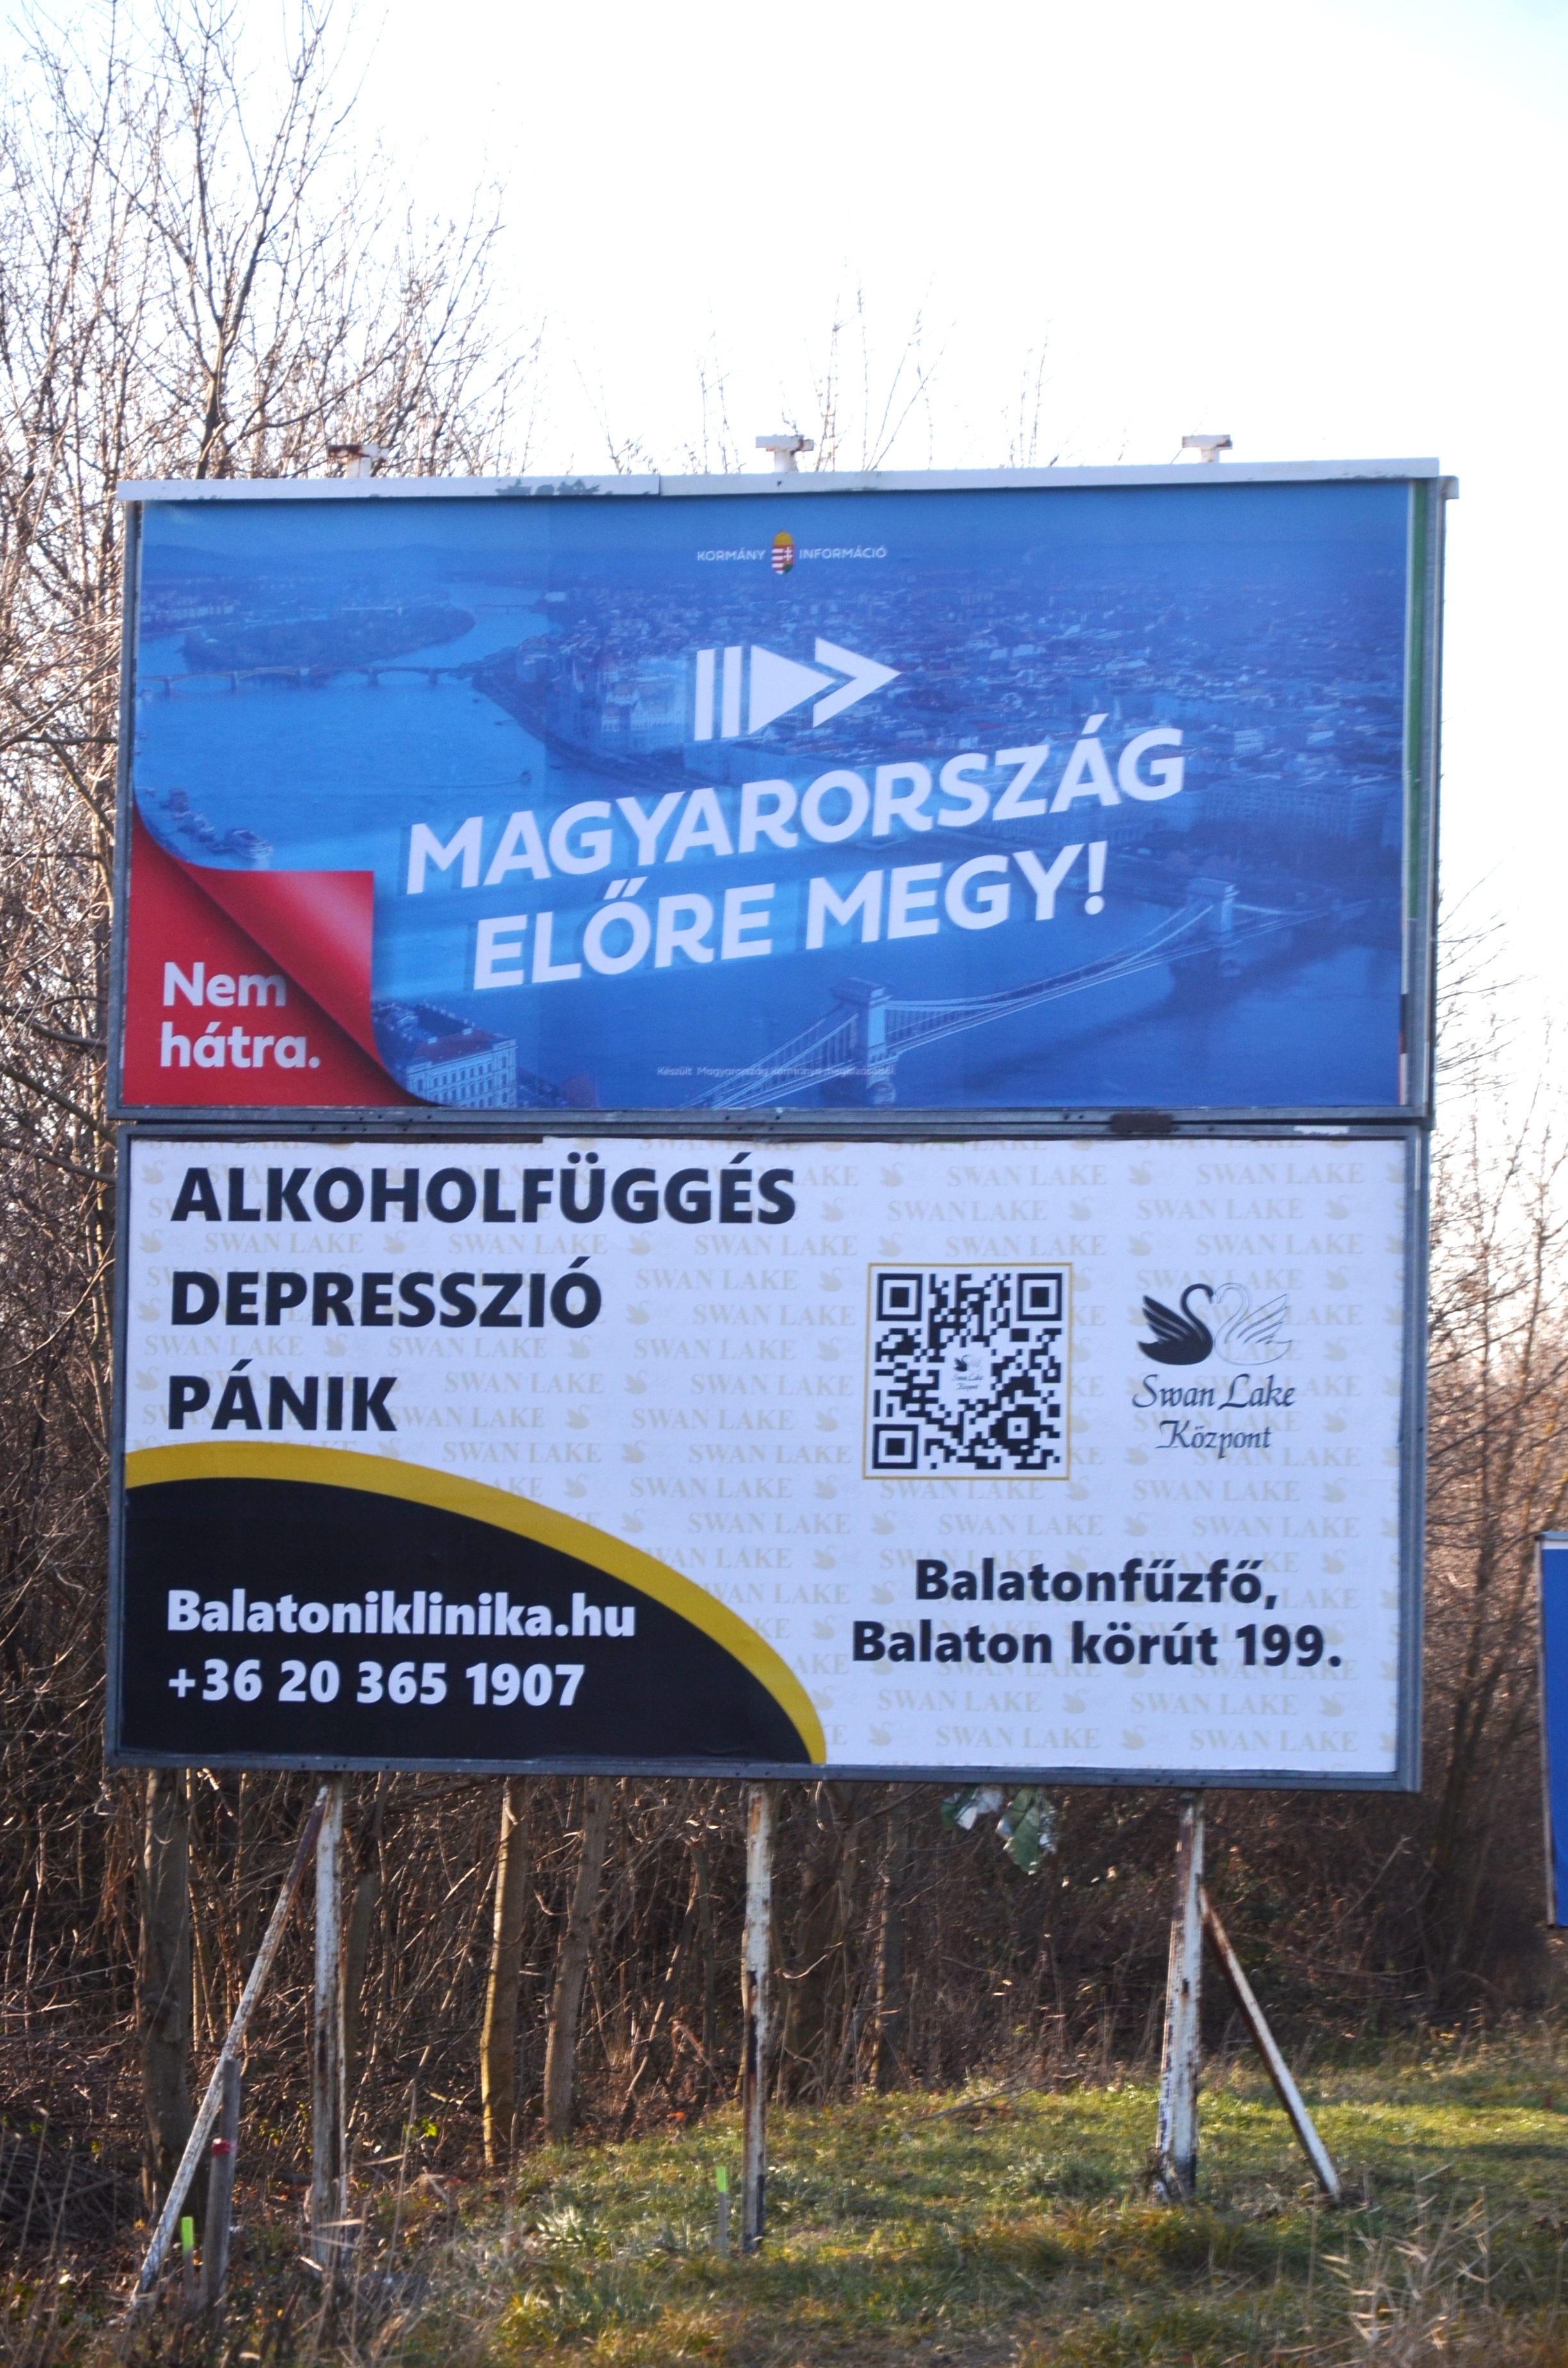 Balatonfűzfőn folyik a magyar történelem legőszintébb plakátkampánya